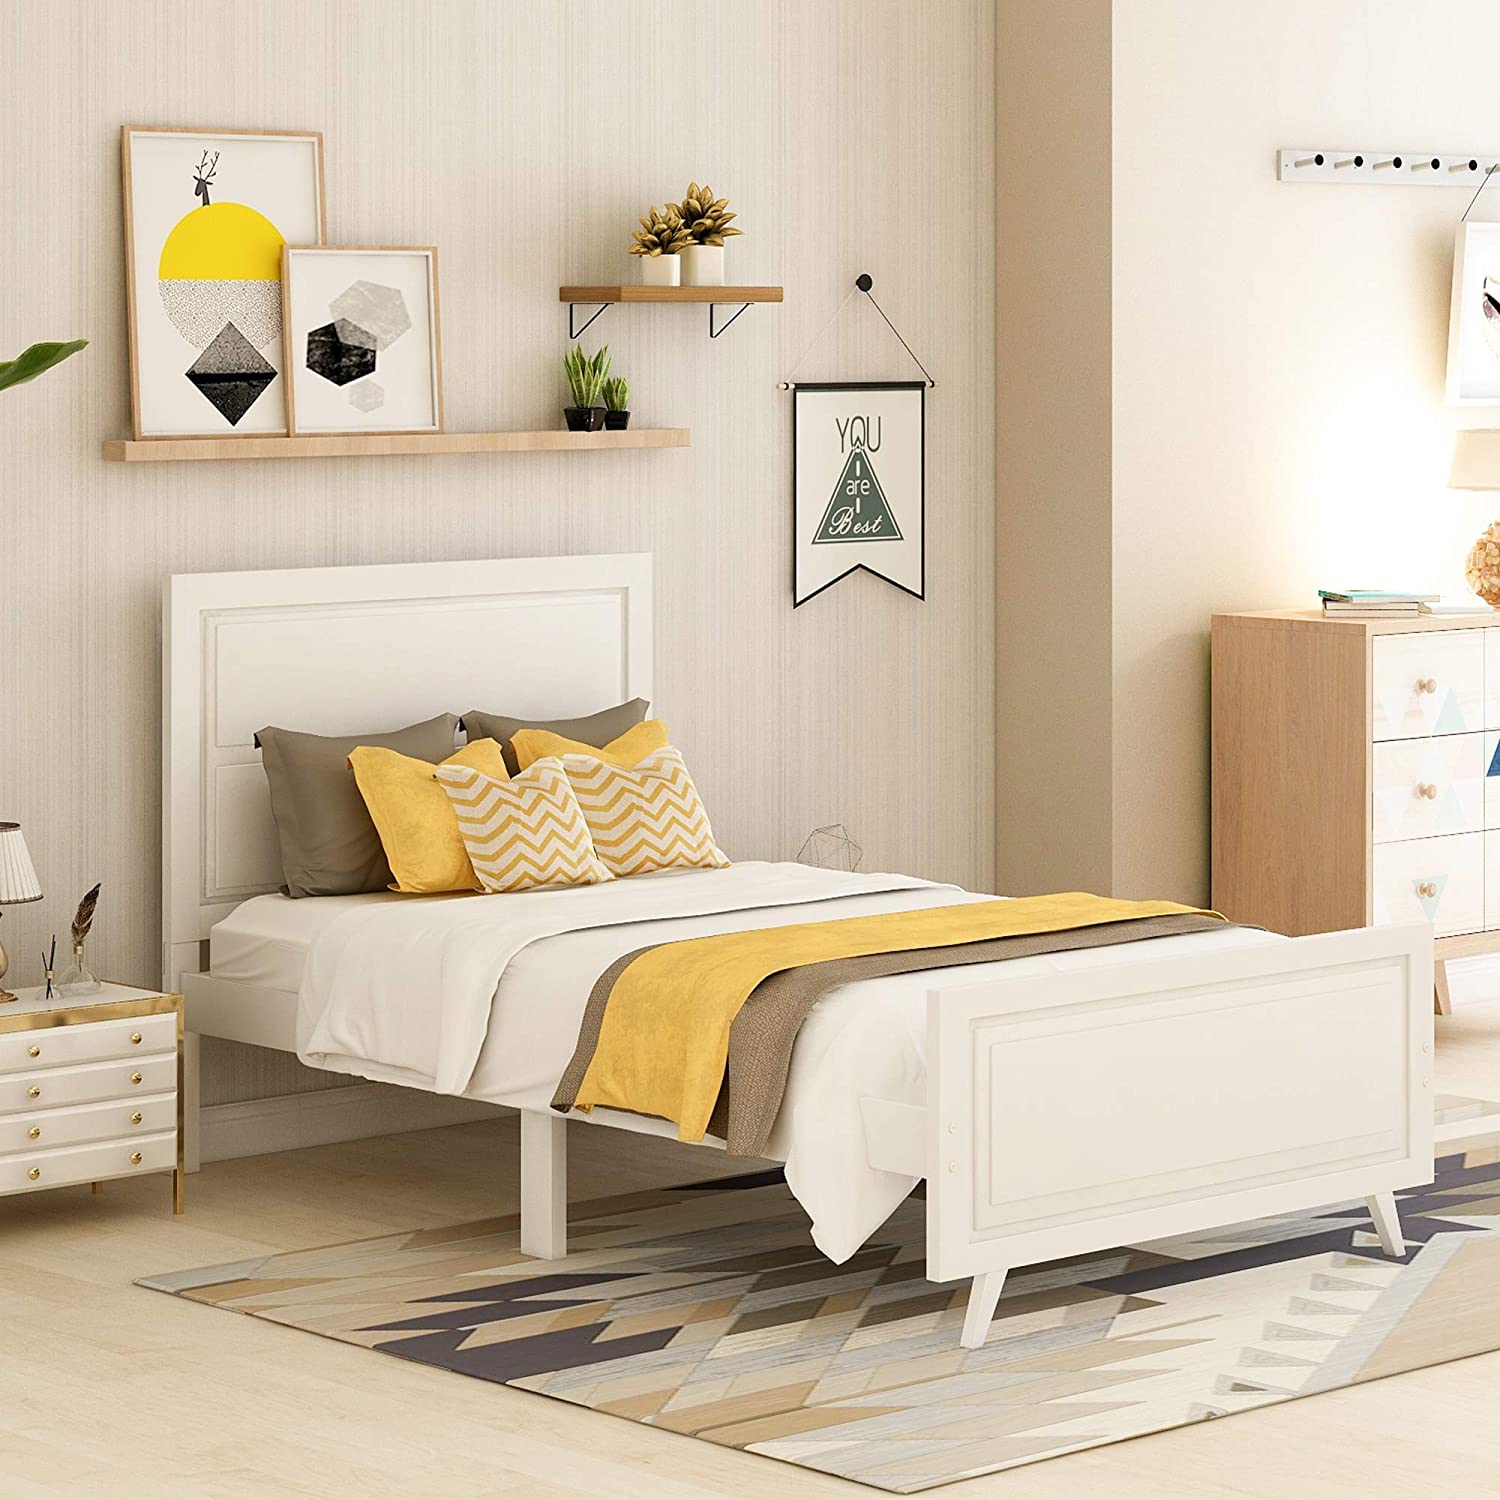 Căn phòng ngủ nhỏ trở nên hài hoà hơn với bộ nội thất đơn giản, tiện nghi với giường đơn gấp gọn, tab, tủ đồ, kệ trang trí treo tường